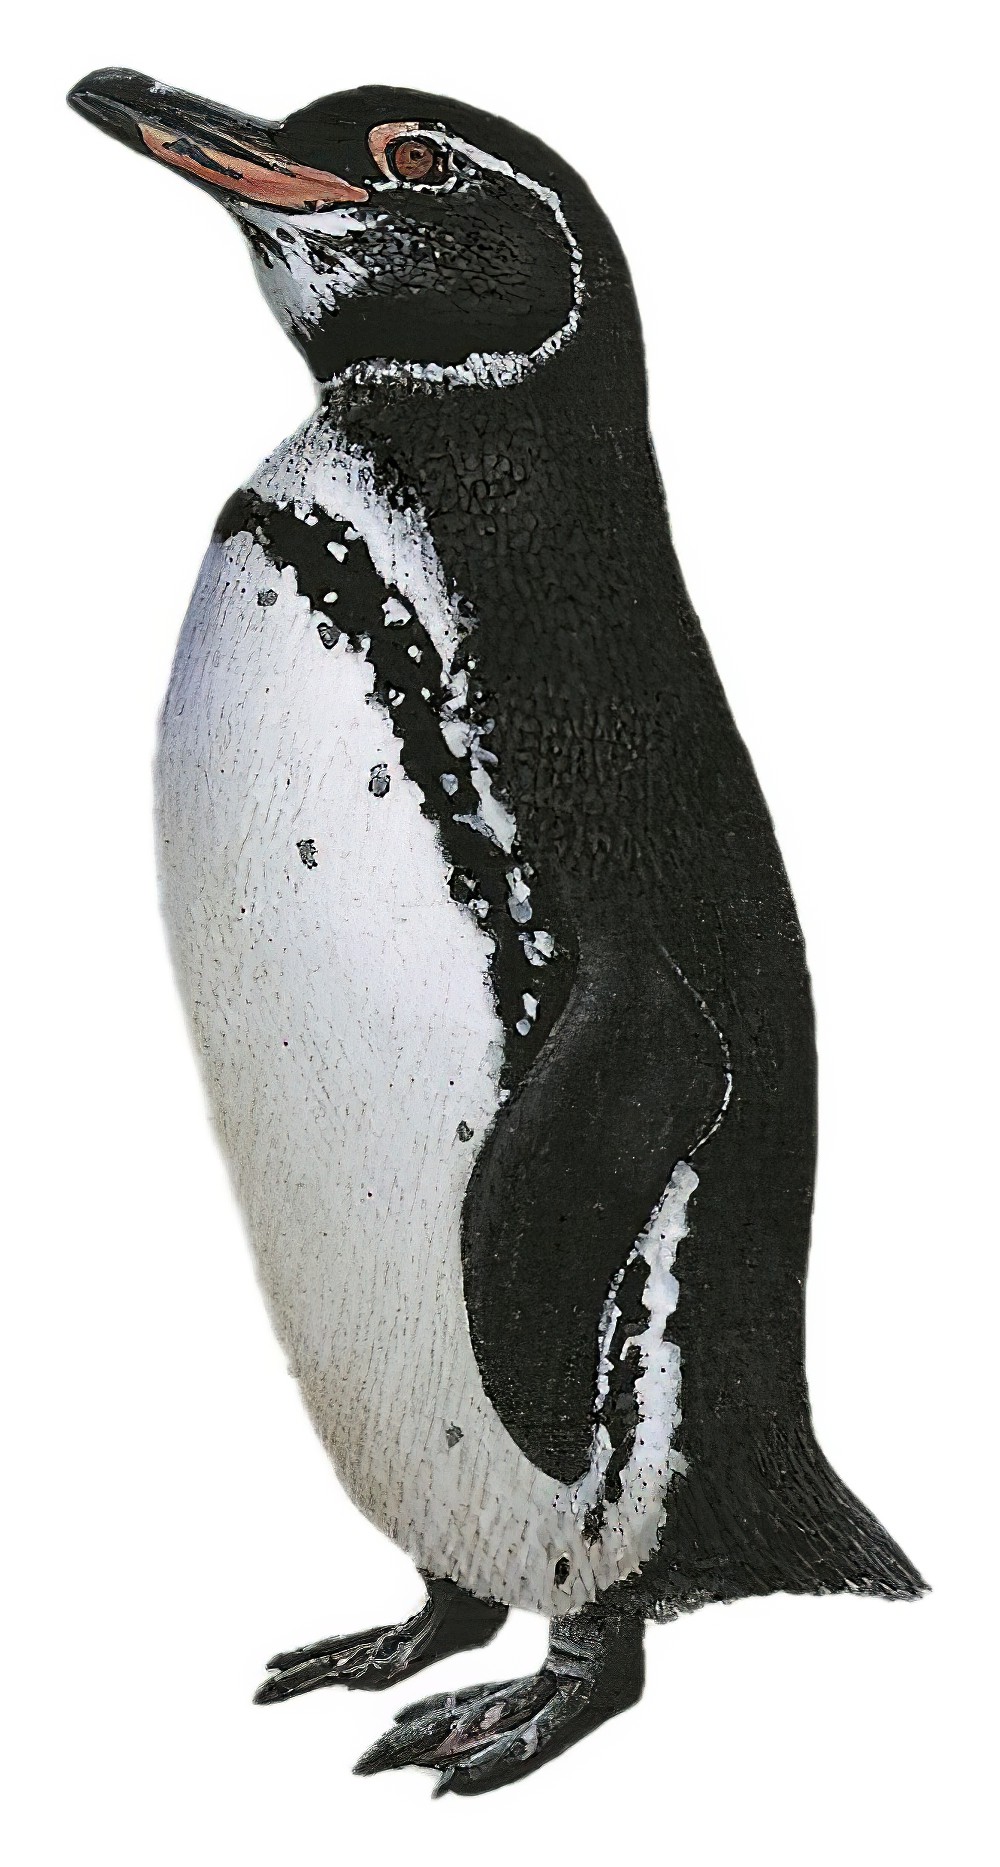 Galapagos Penguin / Spheniscus mendiculus